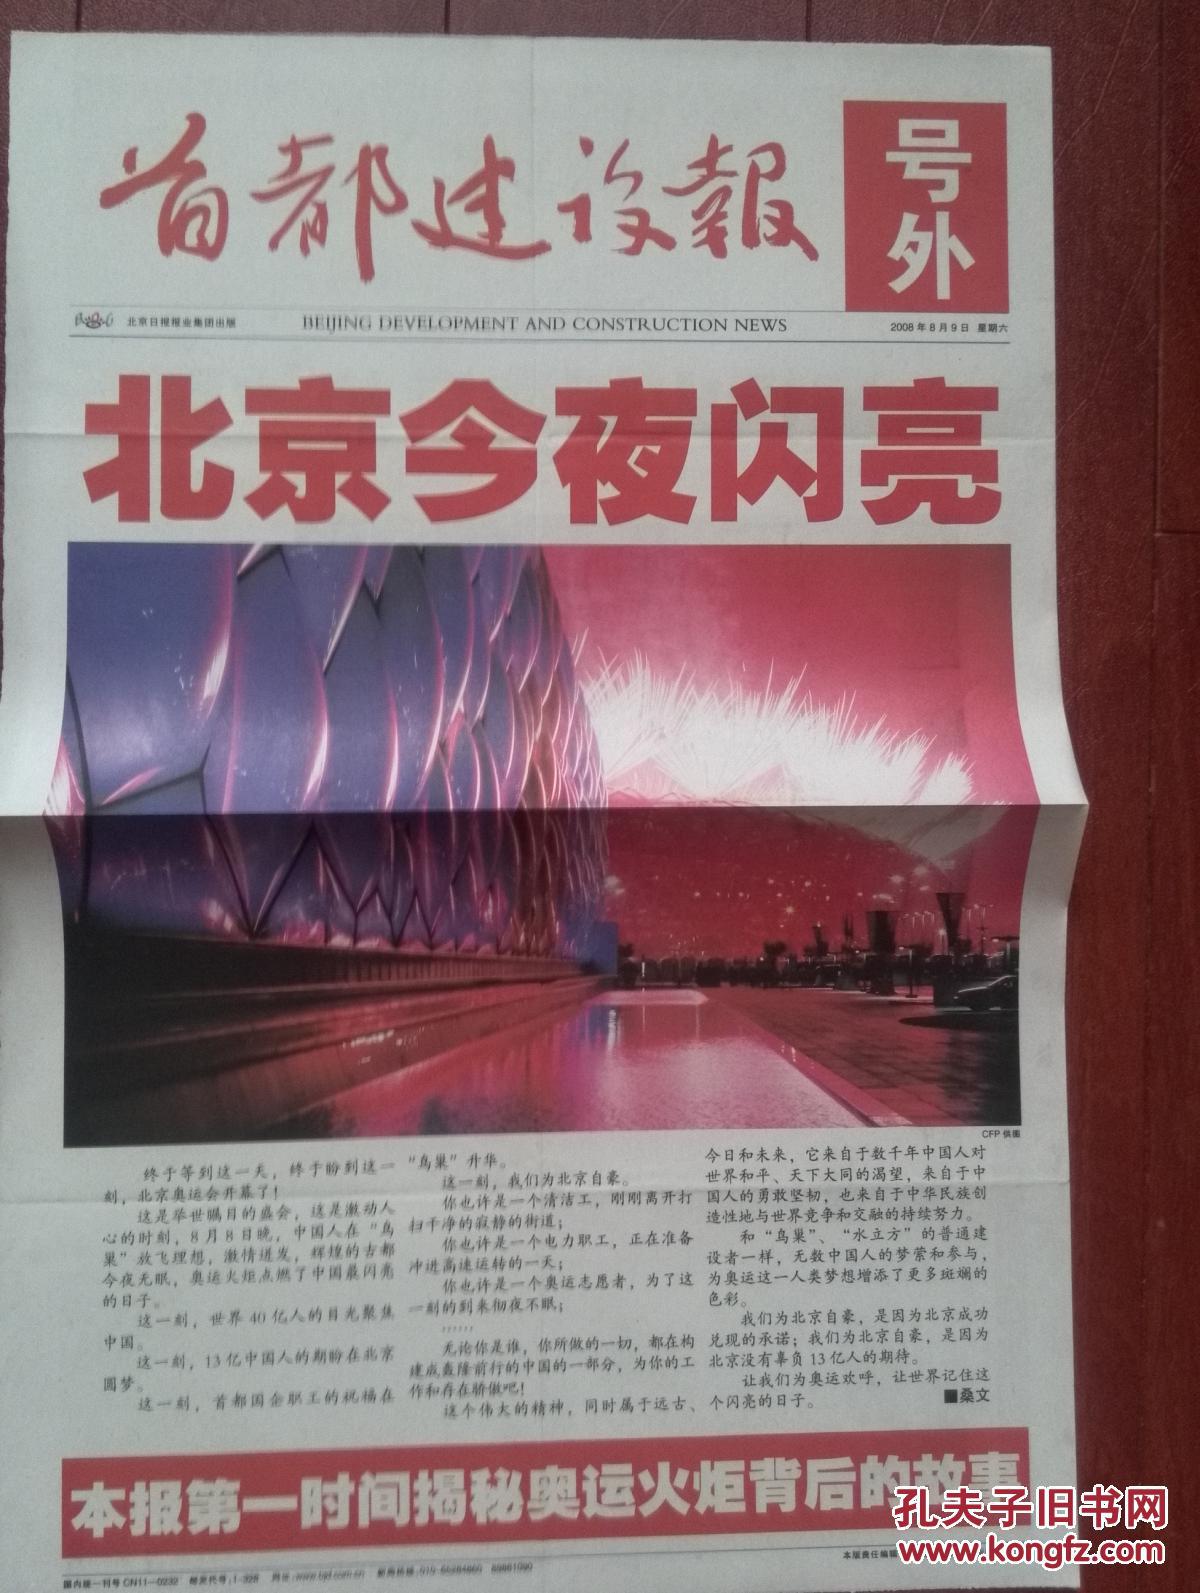 号外：首都建设报，2008年8月9日、9月18日一套两份，北京奥运开幕，北京残奥闭幕